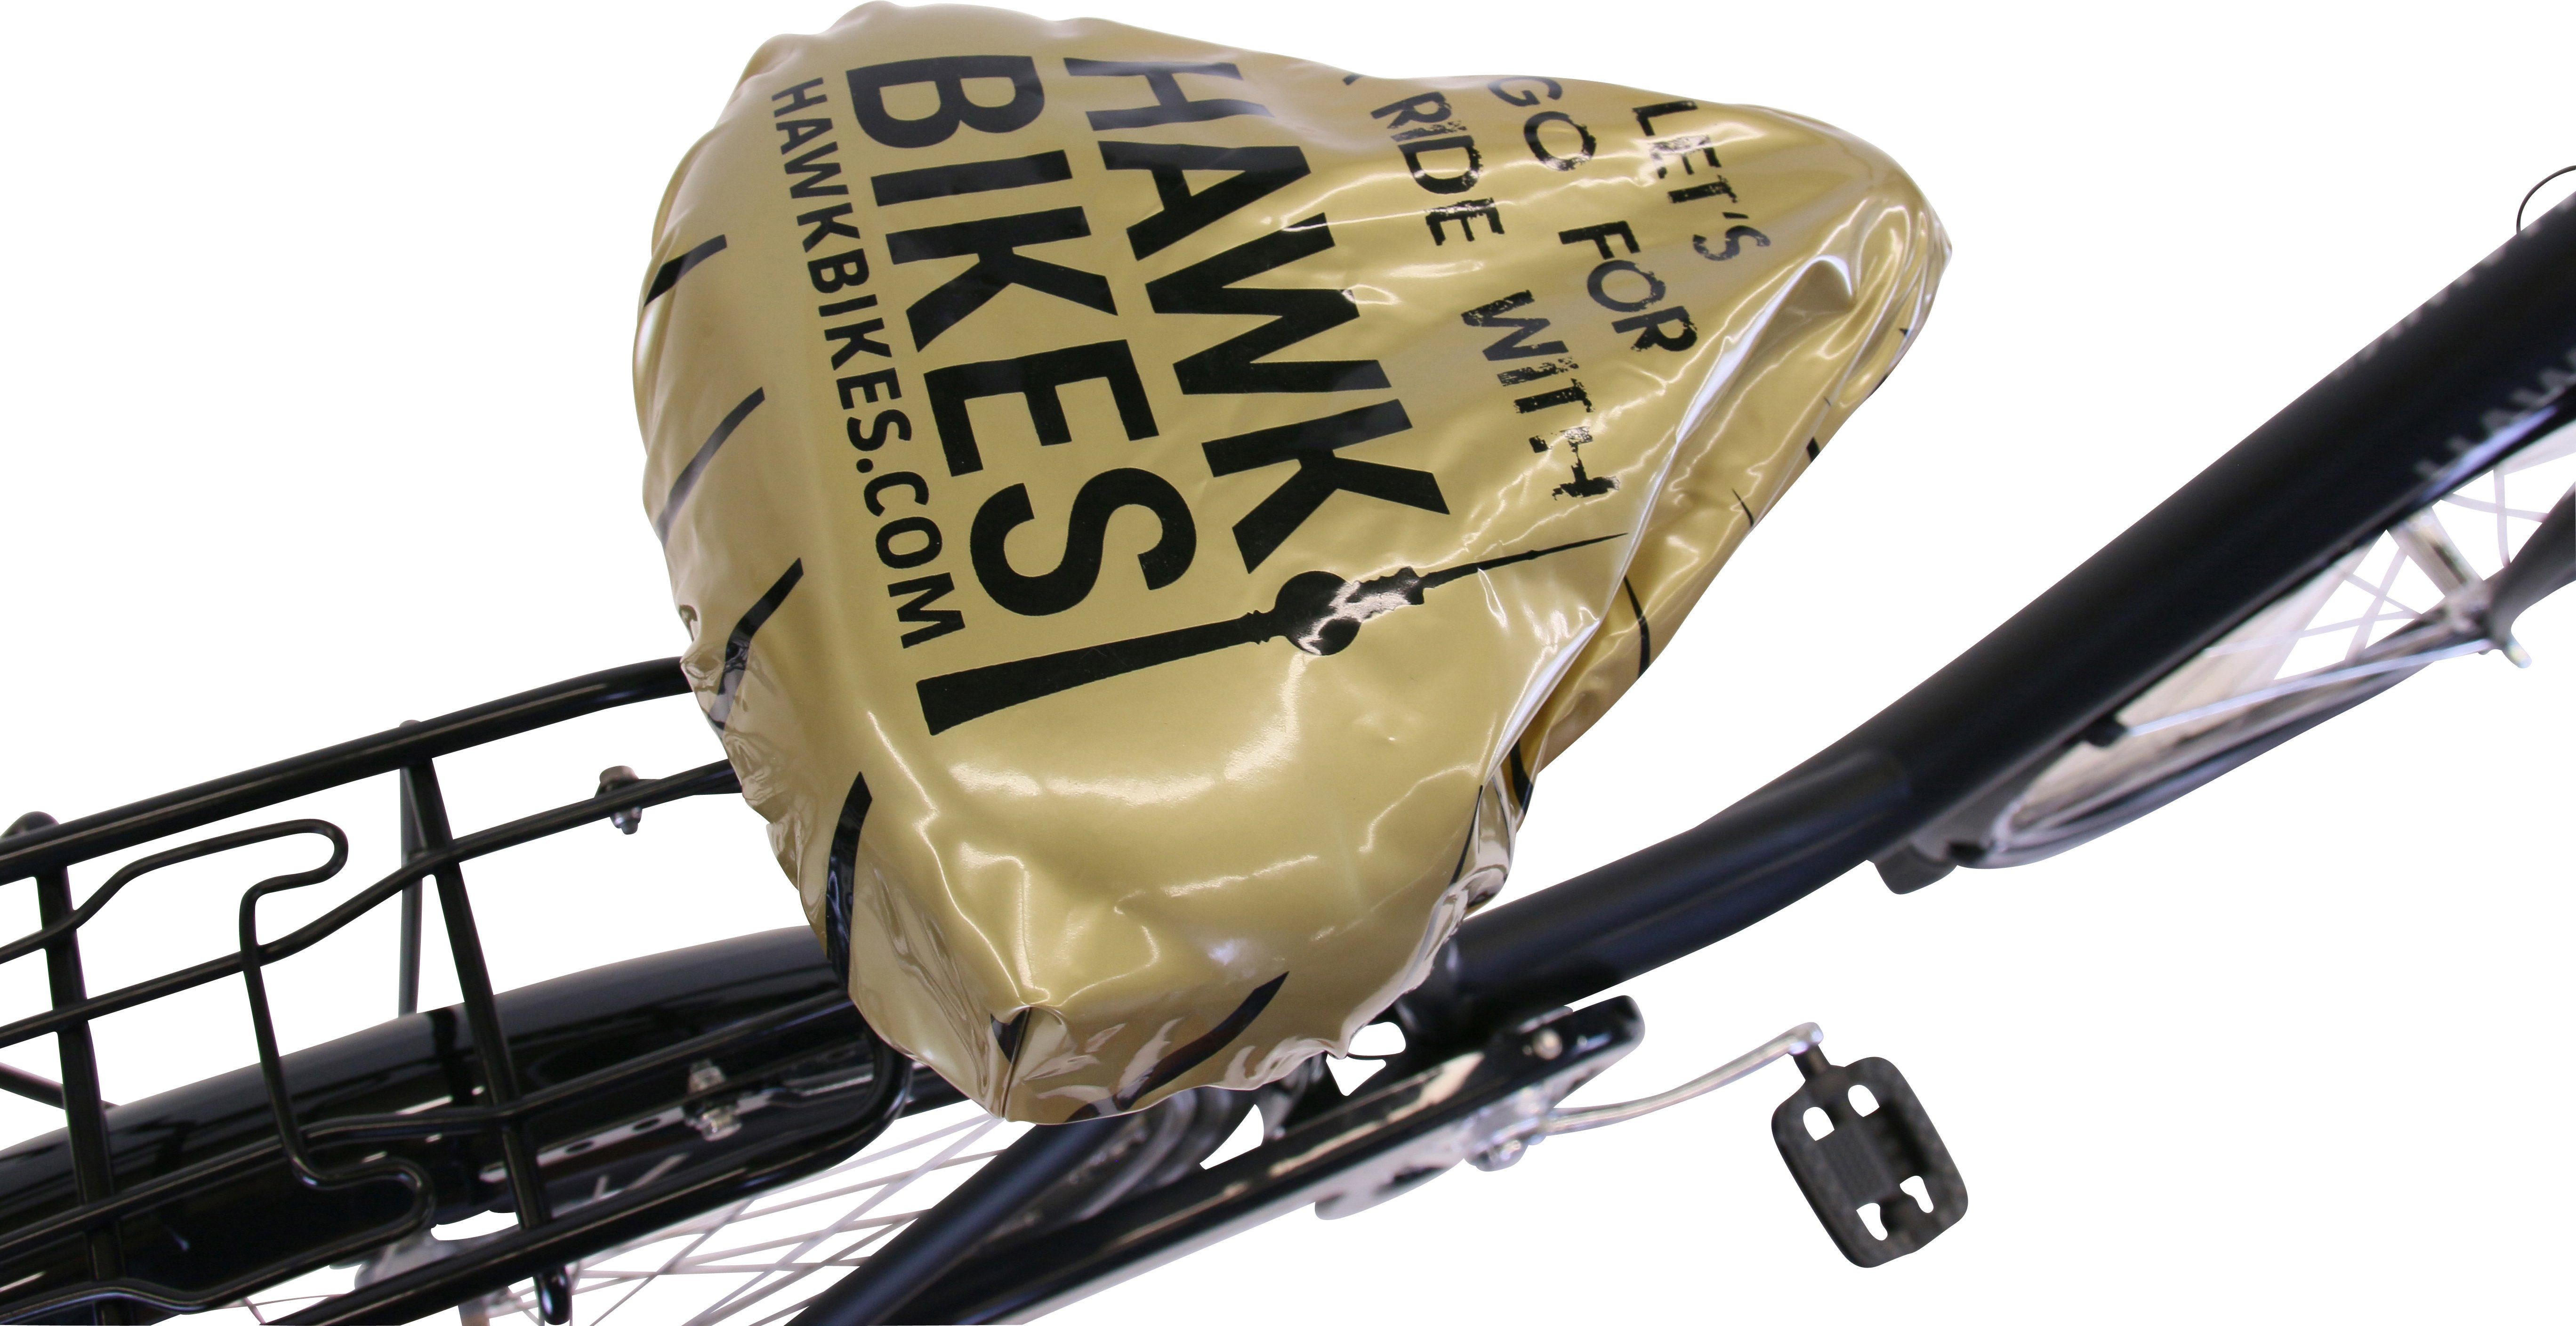 HAWK Bikes Cityrad Black, Shimano Premium City Nexus 3 Gang Wave Schaltwerk HAWK